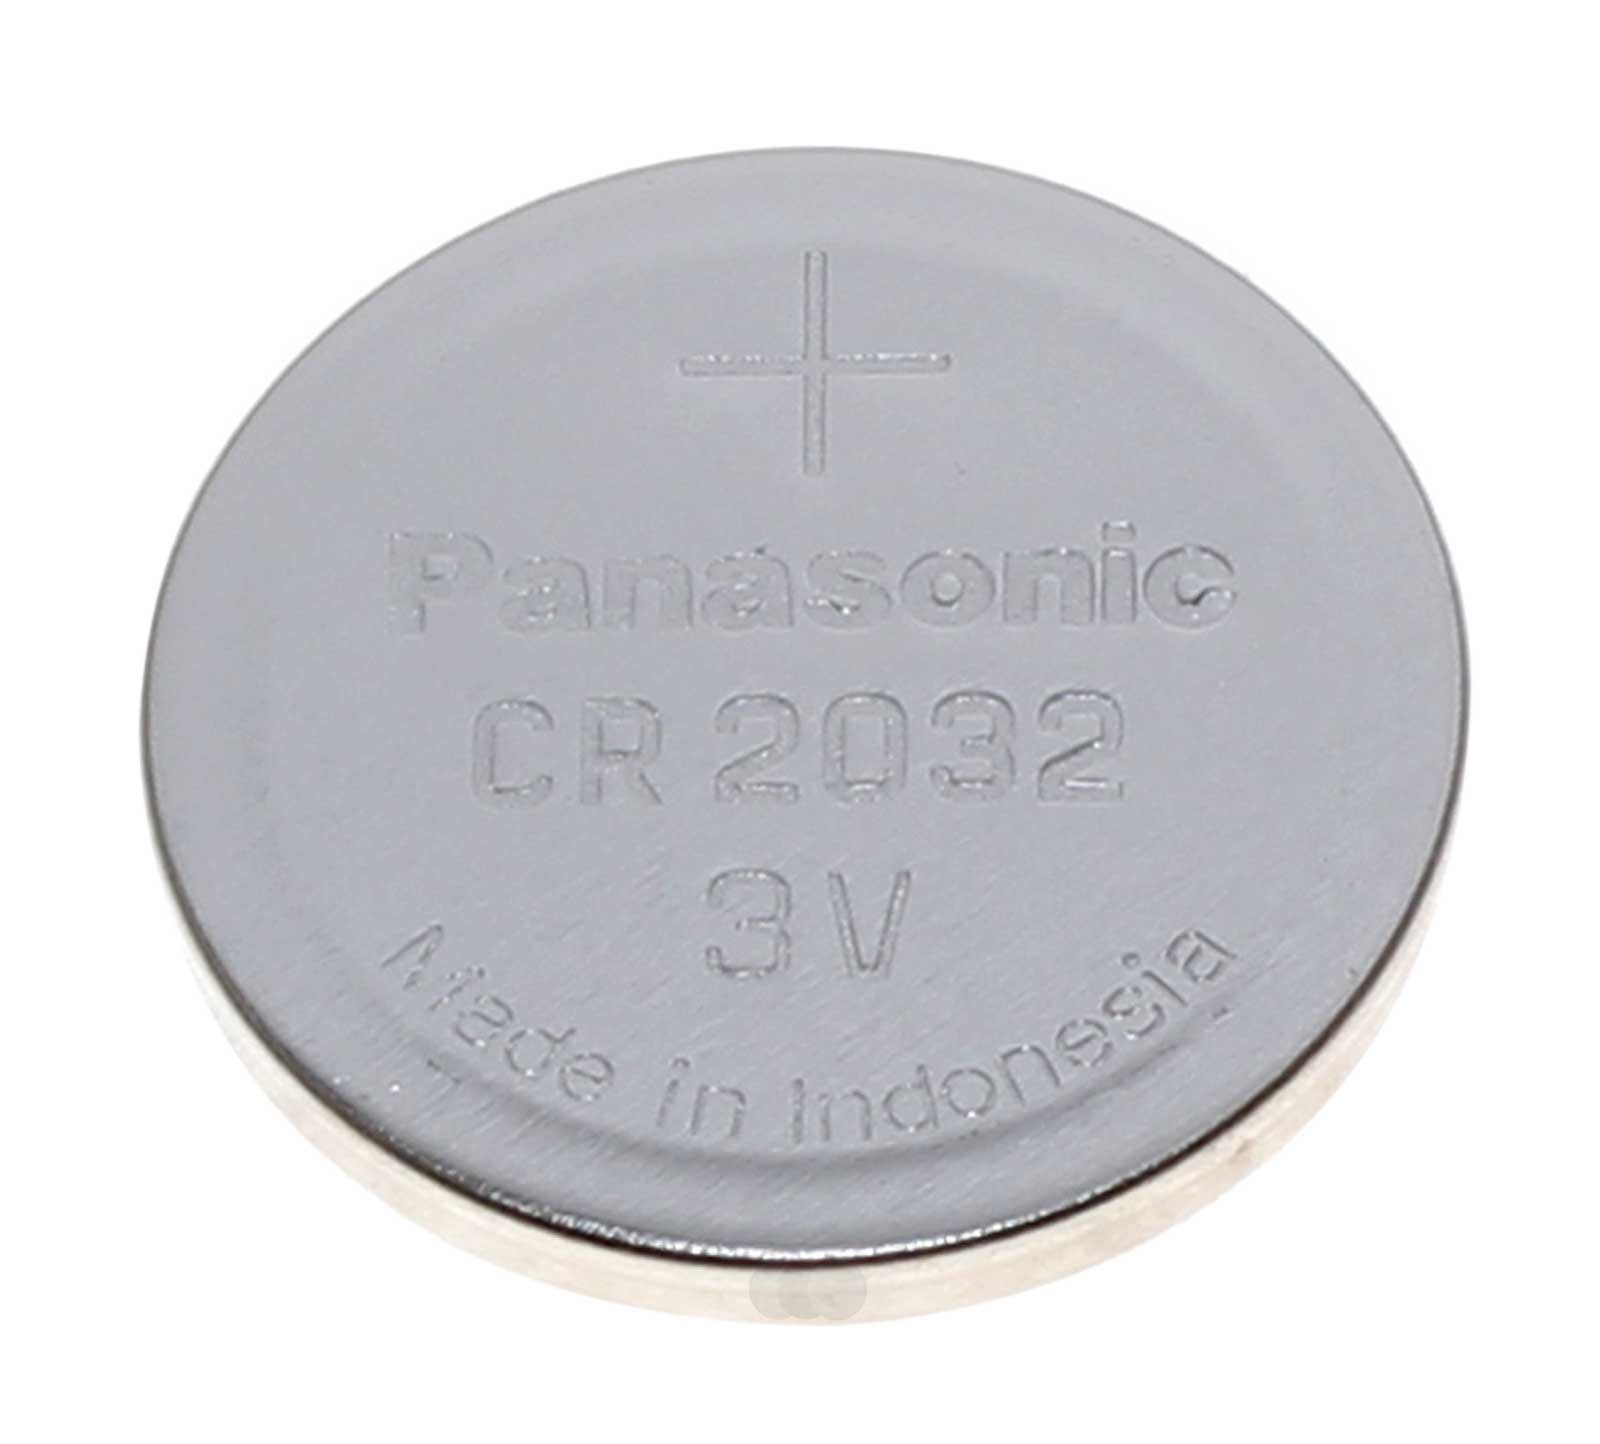 Batterie für VW Golf 4 Autoschlüssel Funksender, Panasonic CR2032 Lithium  Knopfzelle